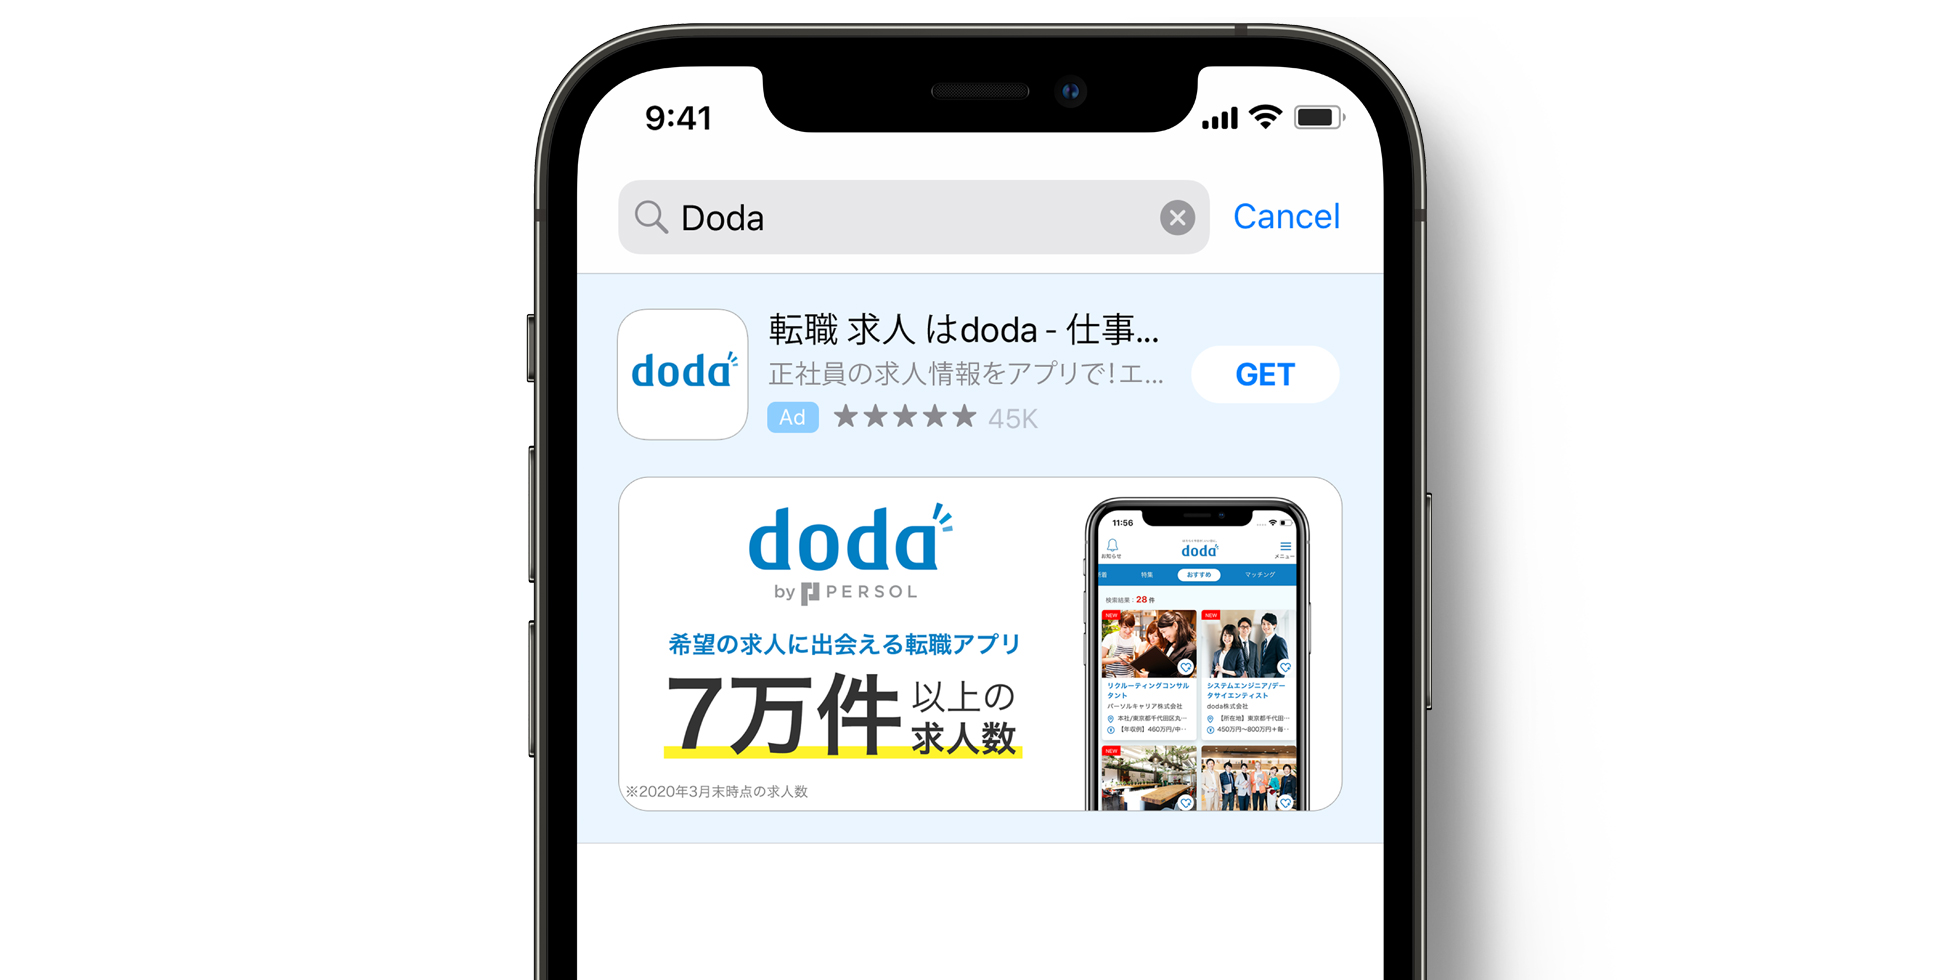 Annuncio di doda nell’App Store